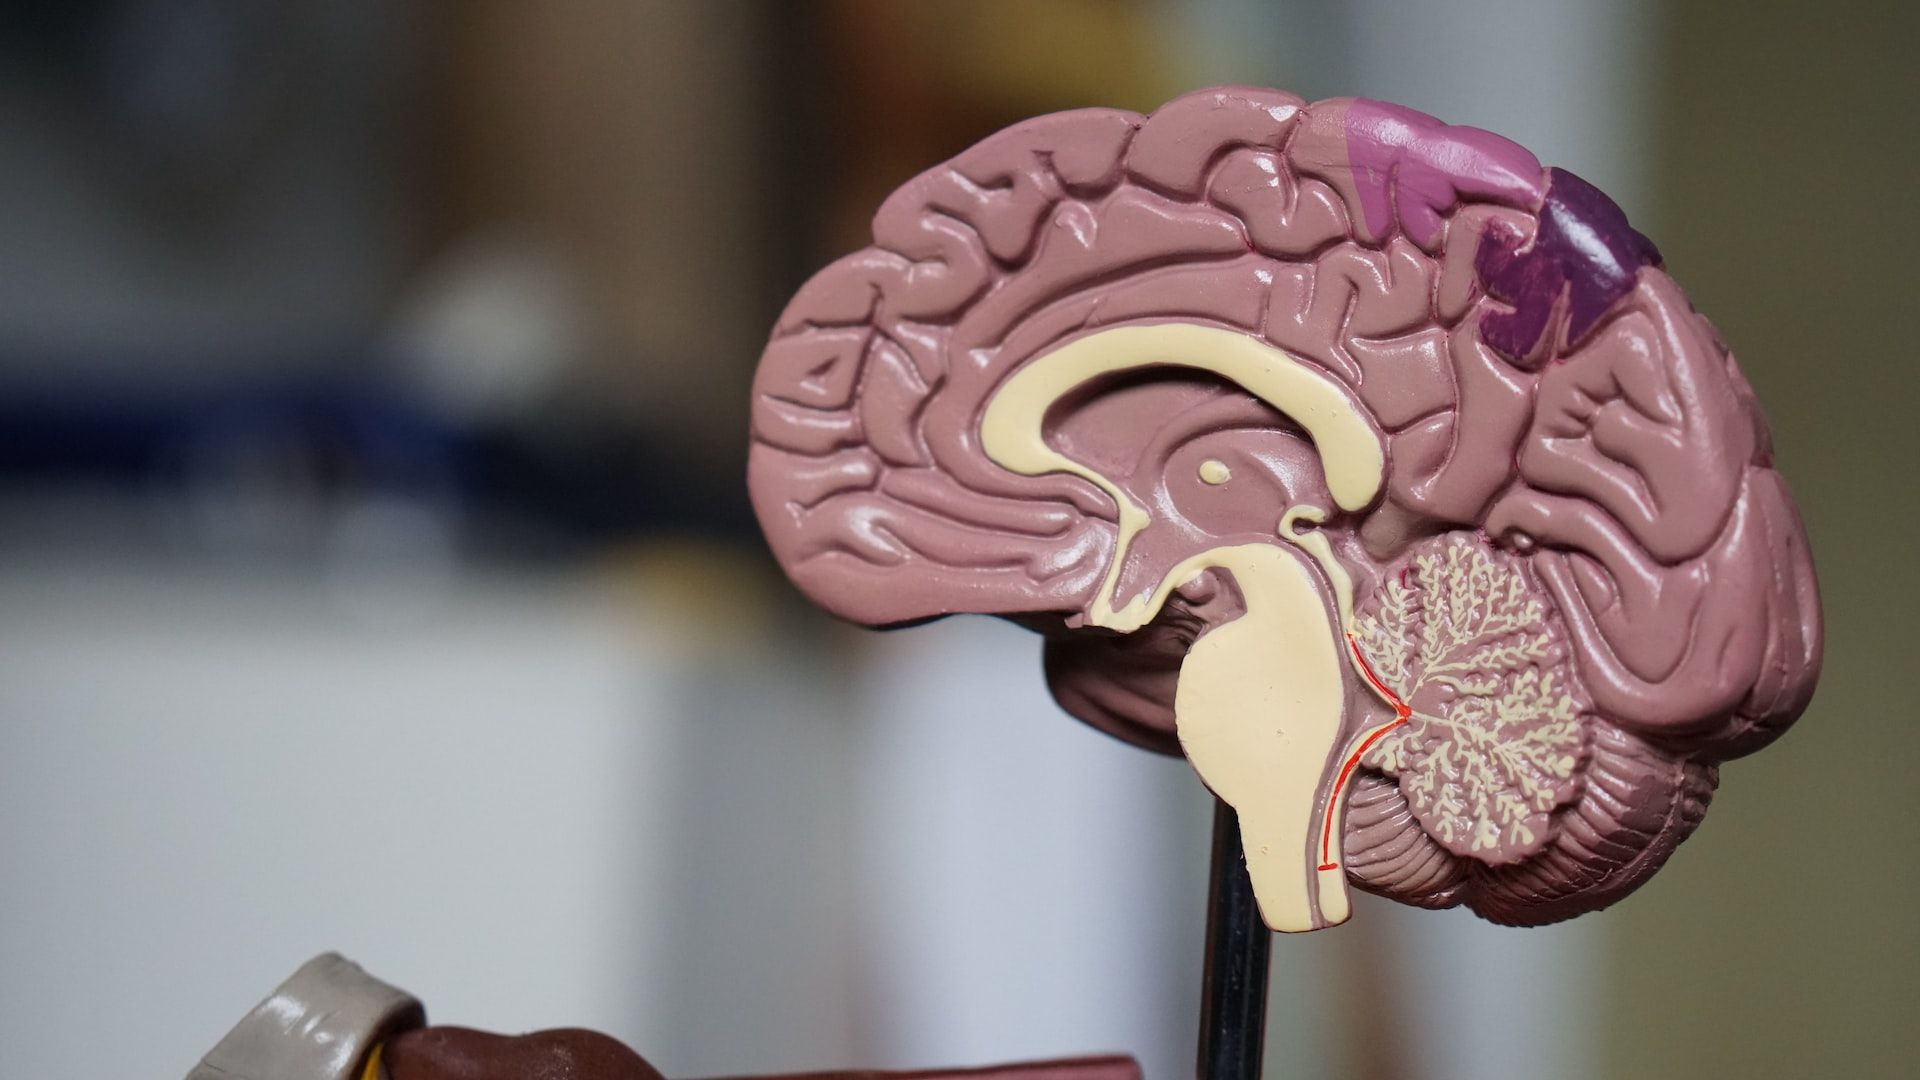 Заболевание десен приводят к повреждению мозга: важное исследование - Здоровье 24